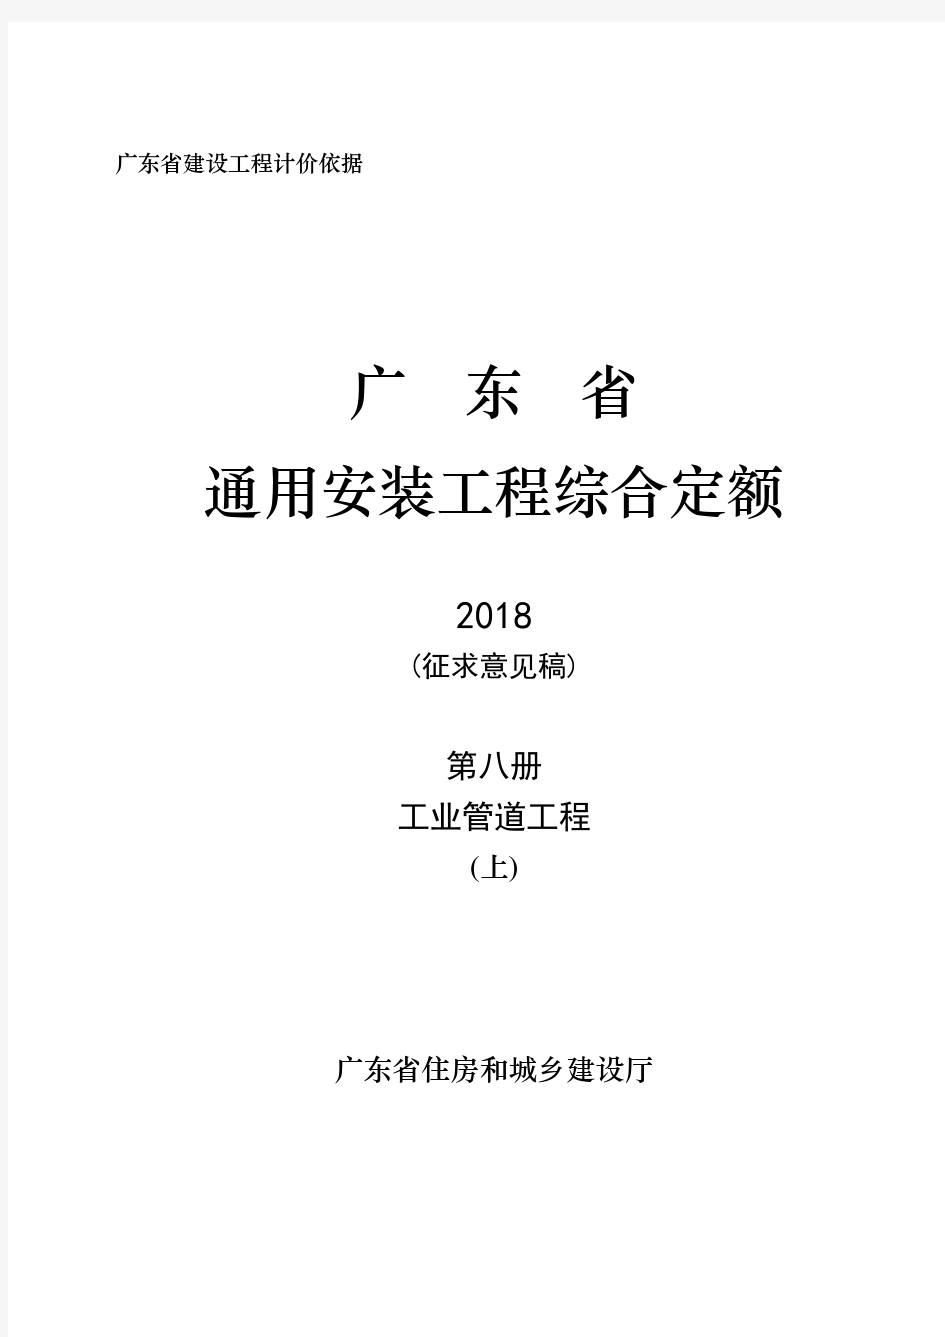 广东省建设工程综合定额(2018)C.8_工业管道工程(上)